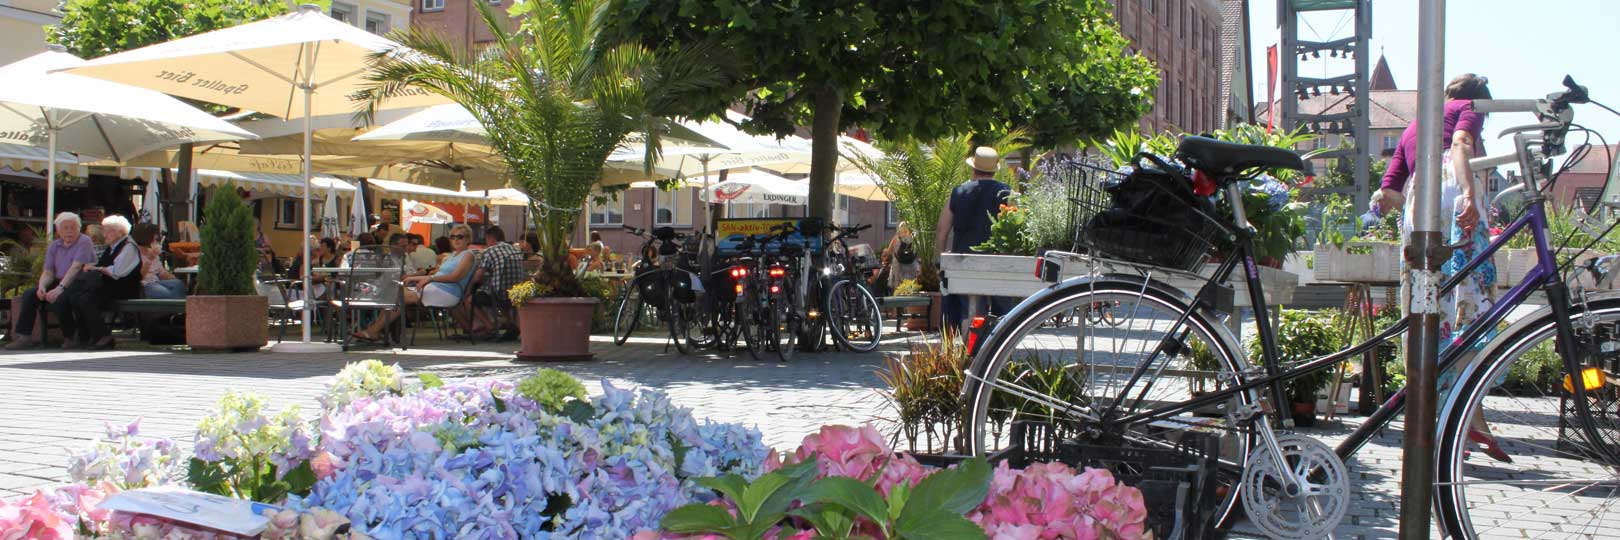 Hintergrundbild: Blumen-Marktplatz